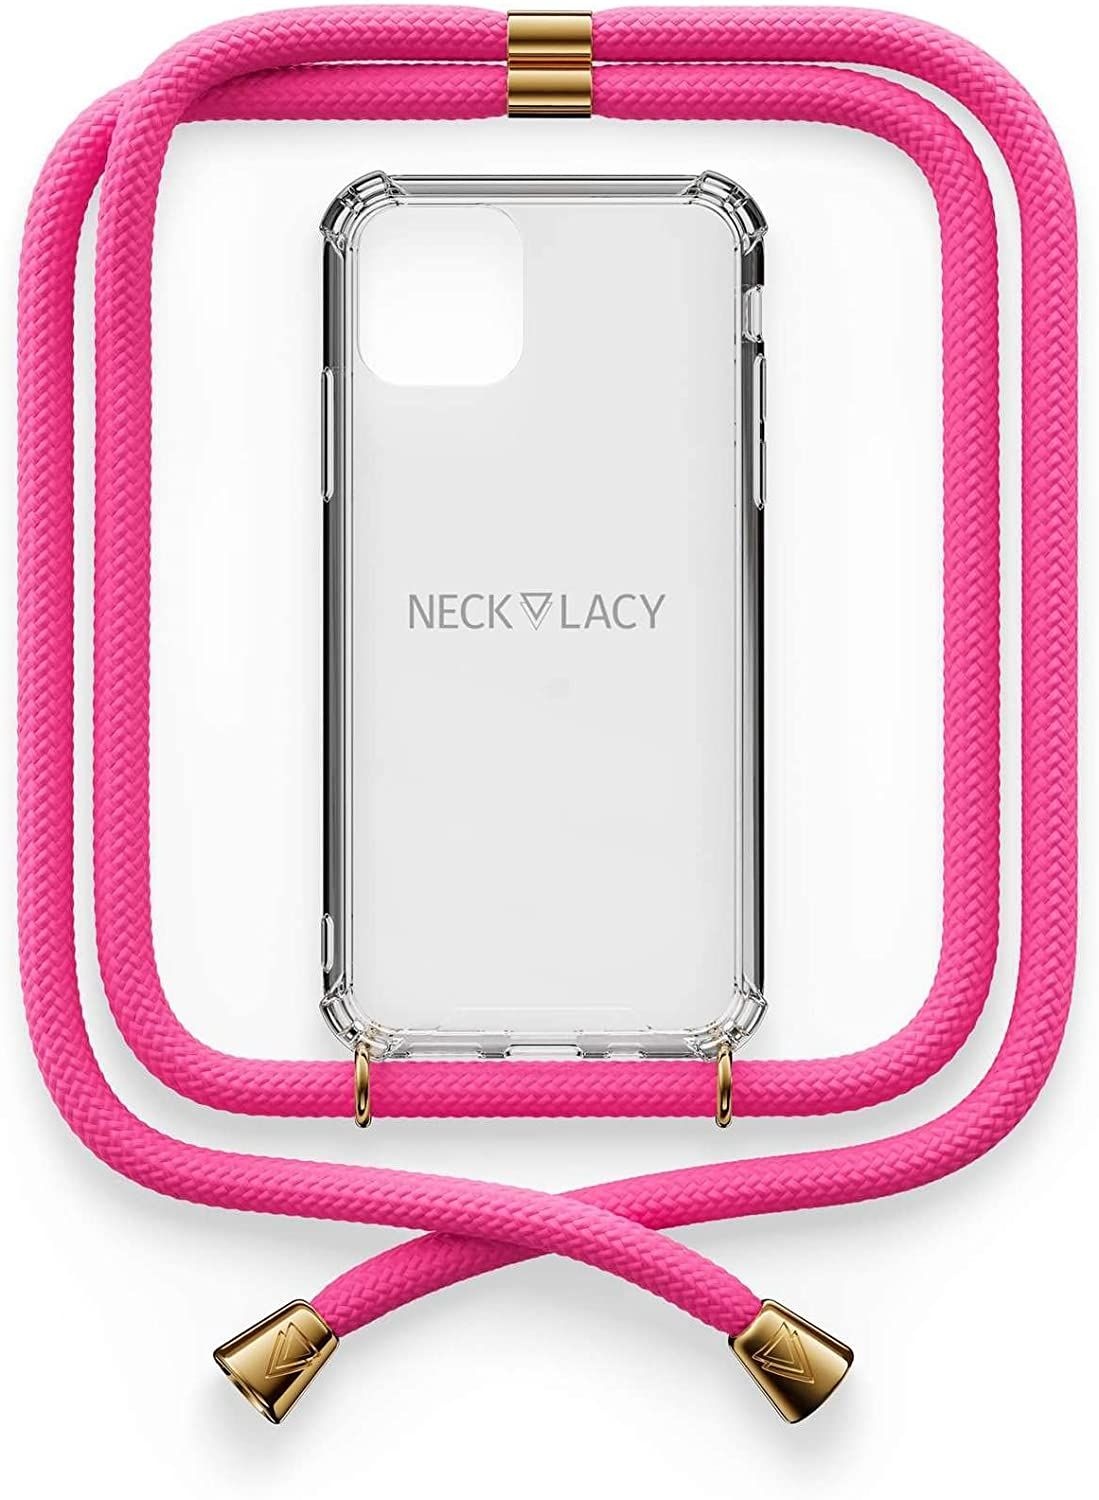 NECKLACY Handykette Handyhülle zum umhängen - für iPhone 11 - Case / Handyhülle mit Band zum umhängen - Trageband Hals mit Kordel - Smartphone Necklace, Cotton Candy